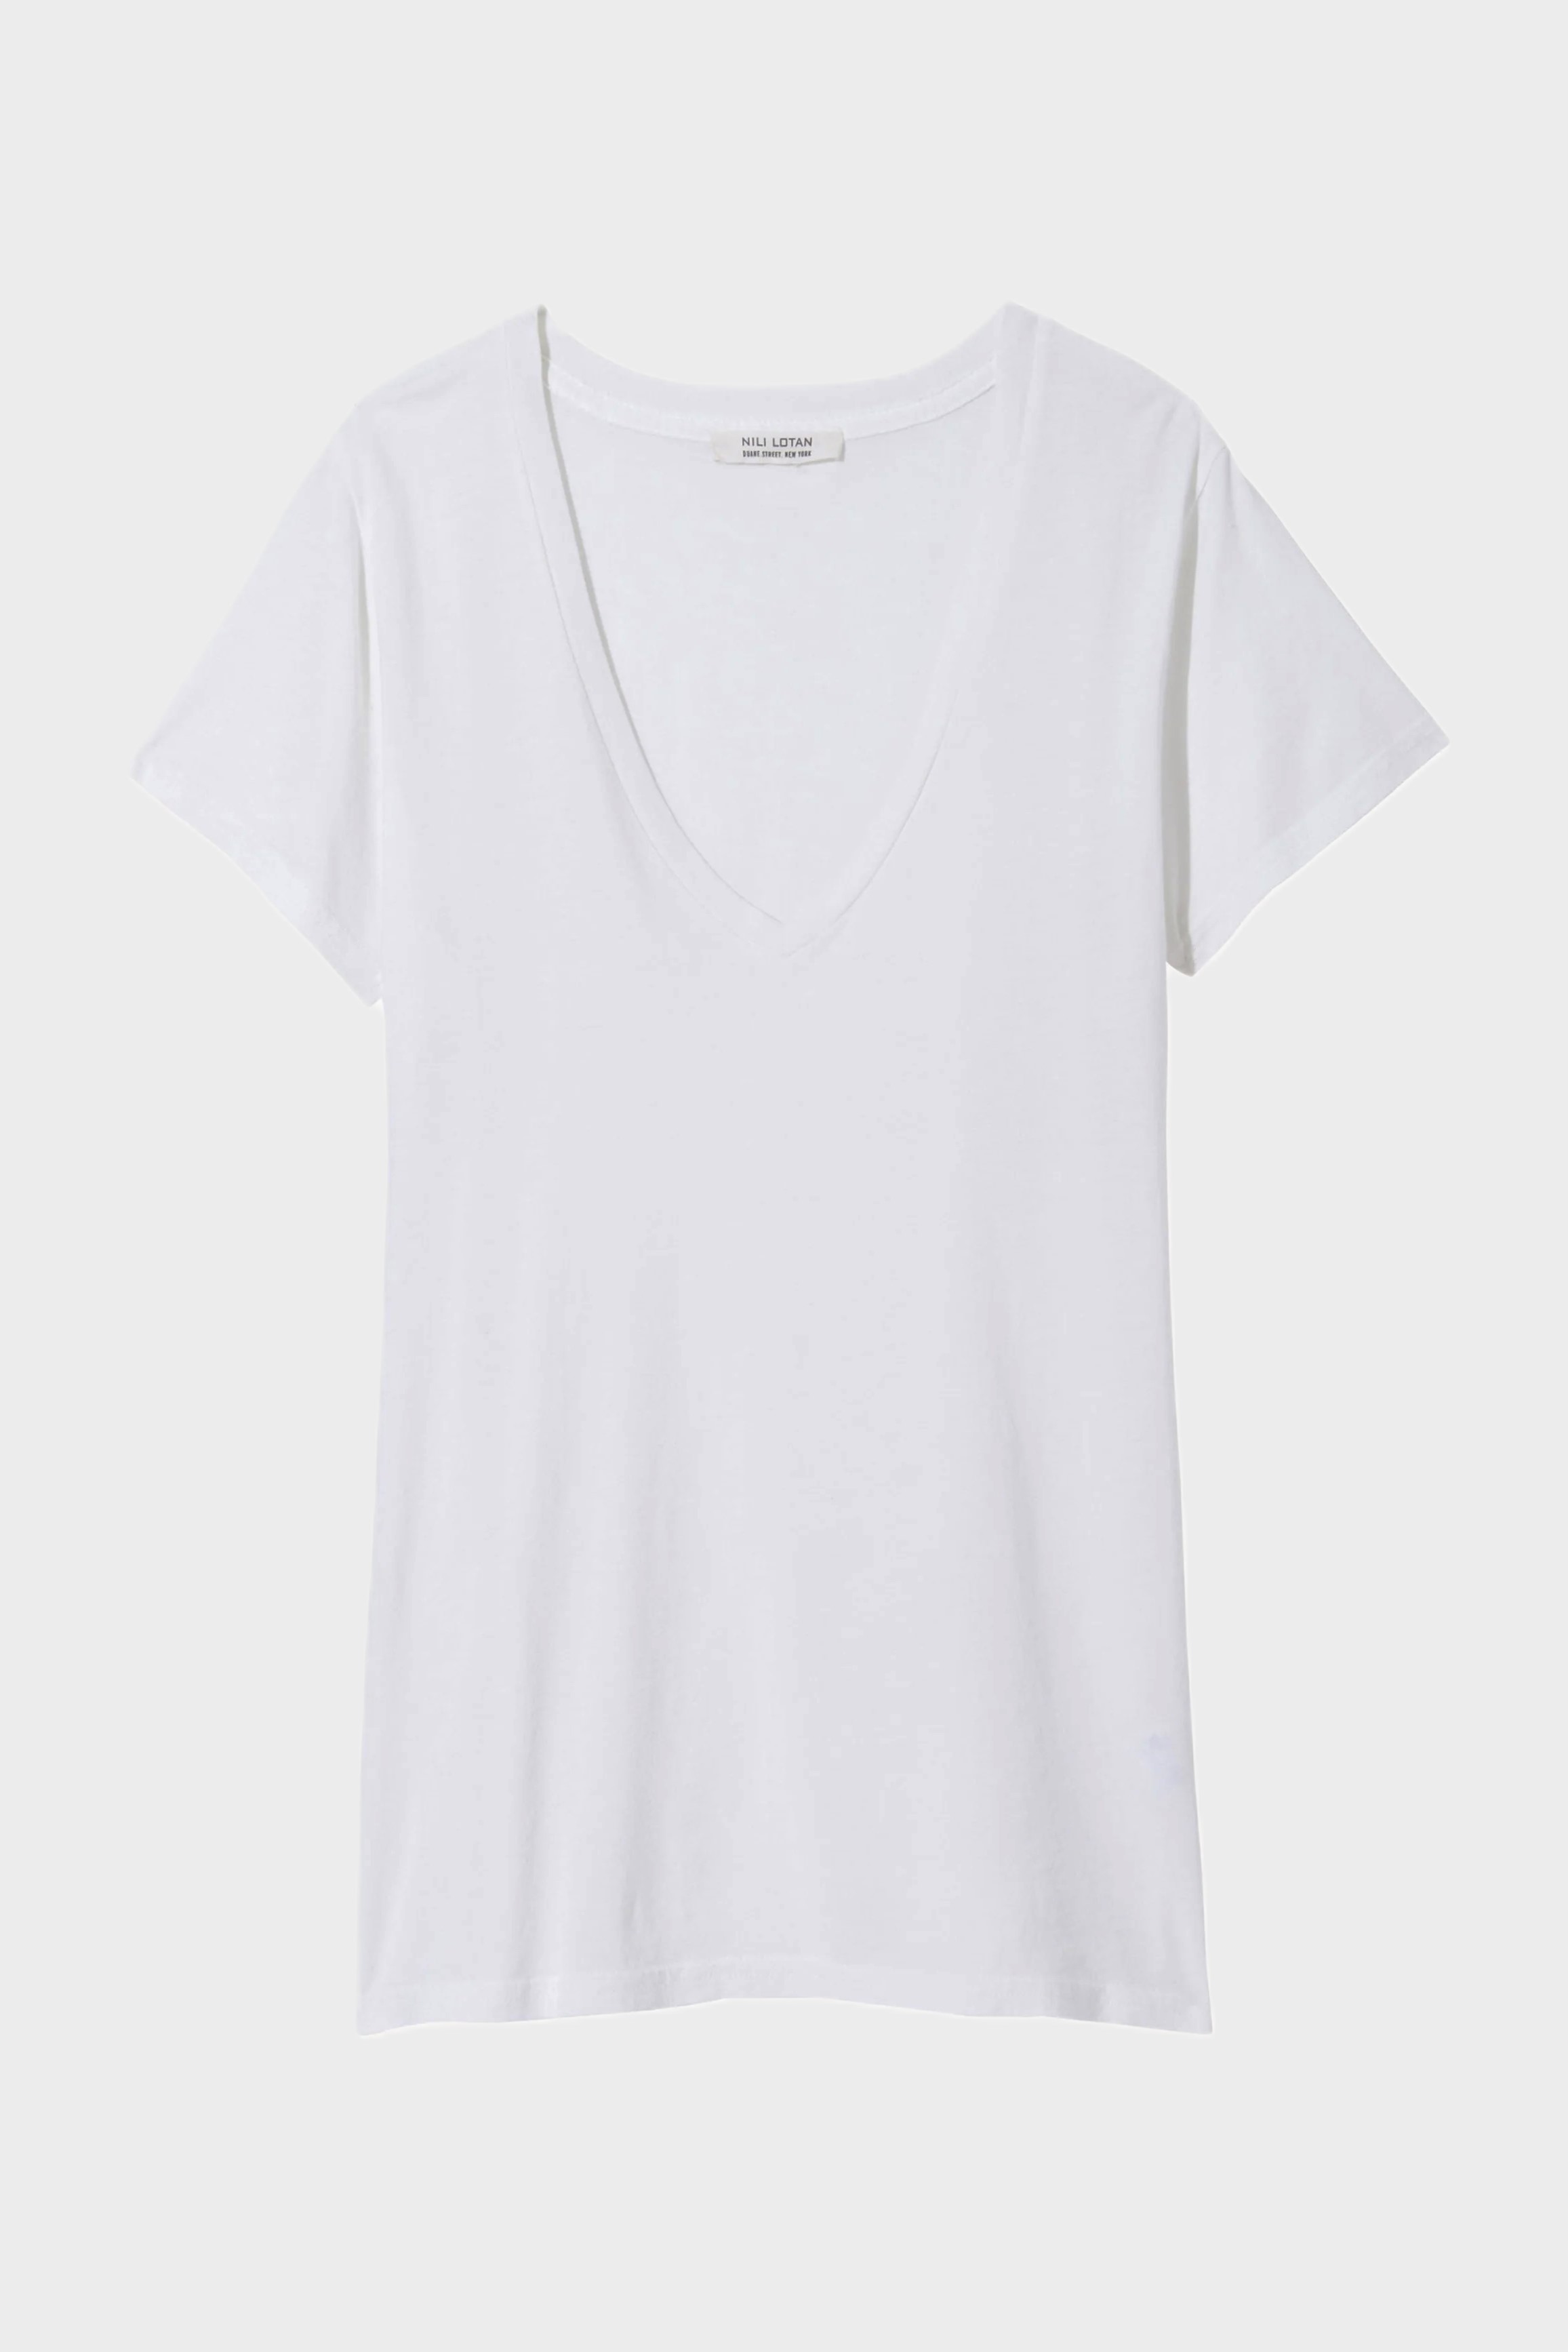 NILI LOTAN Carol V-Neck T-Shirt in White